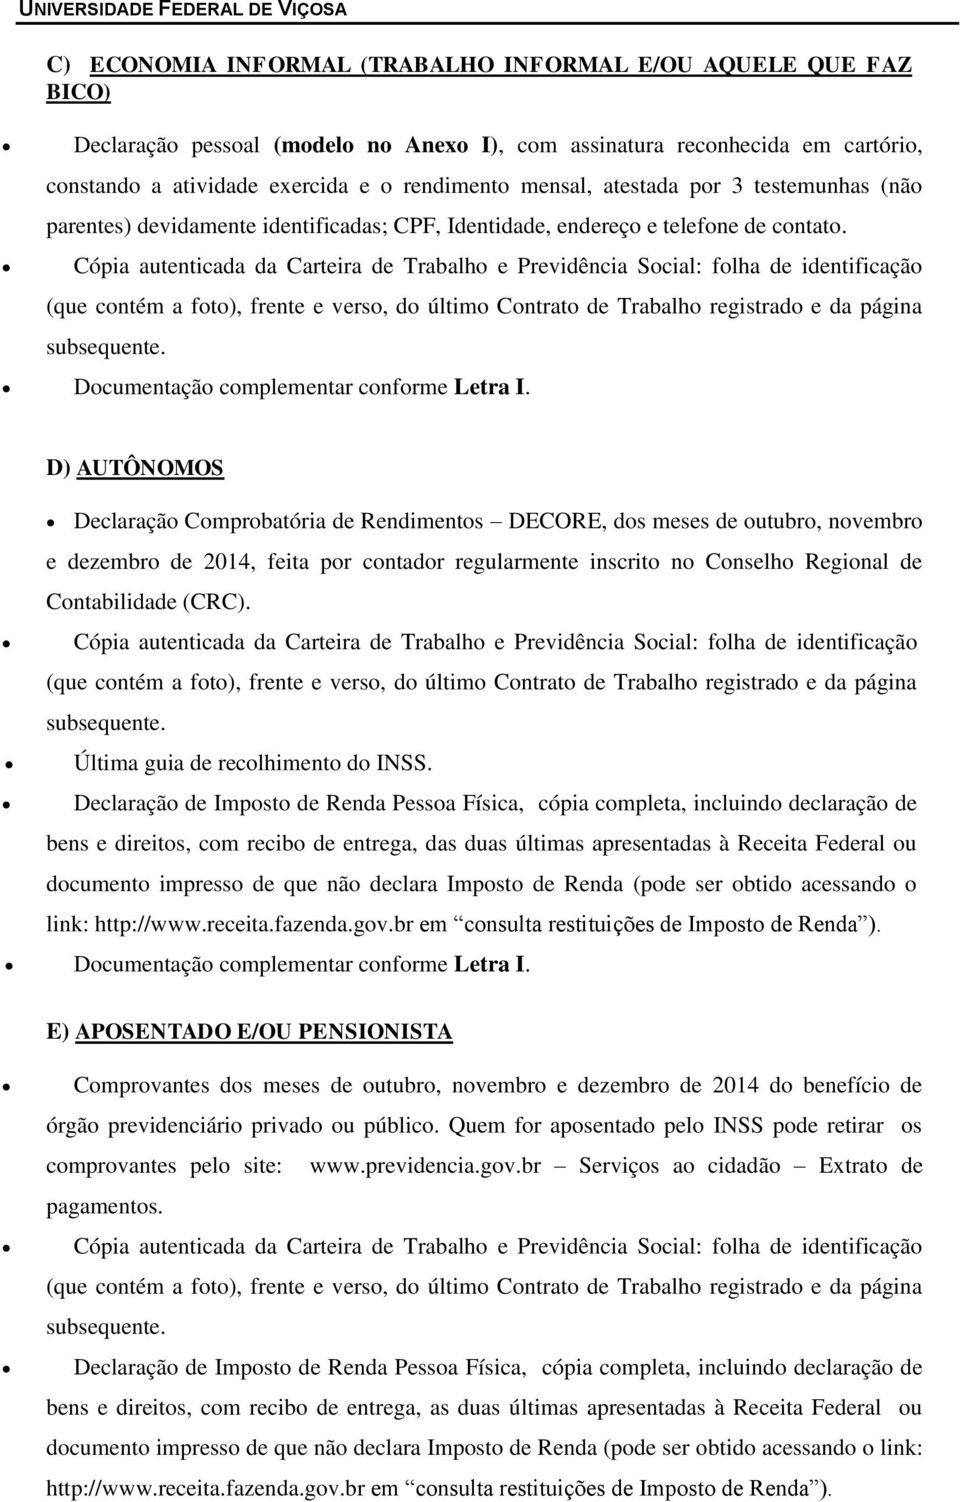 D) AUTÔNOMOS Declaração Comprobatória de Rendimentos DECORE, dos meses de outubro, novembro e dezembro de 2014, feita por contador regularmente inscrito no Conselho Regional de Contabilidade (CRC).